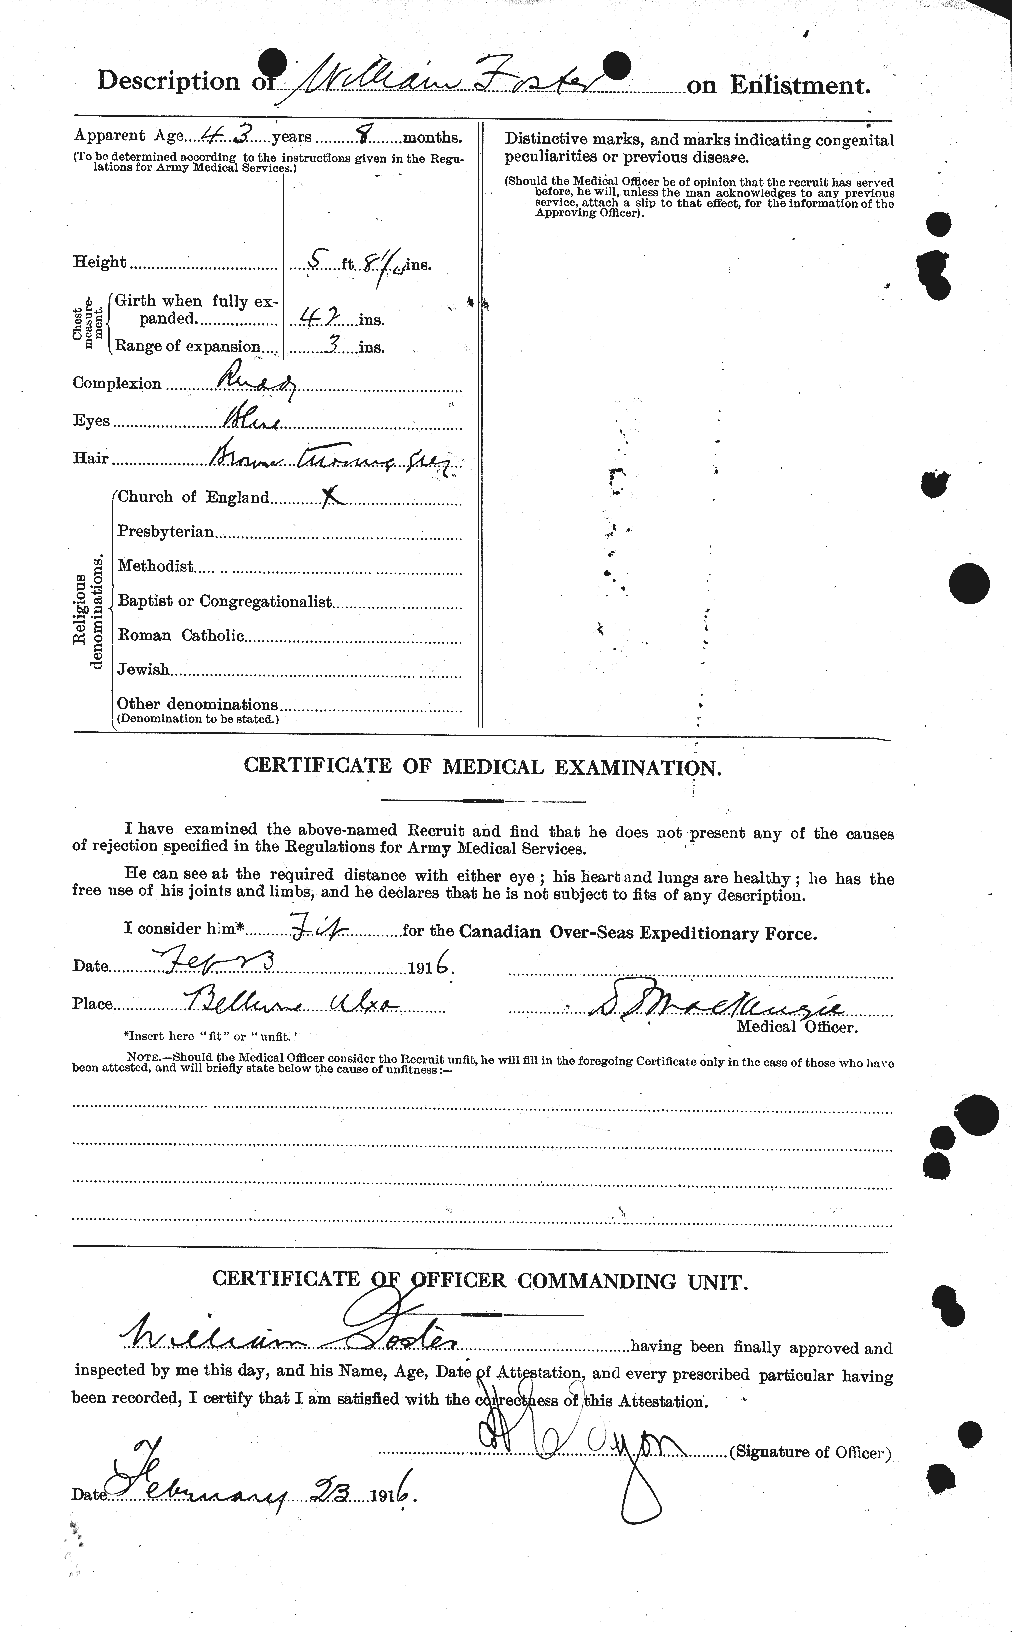 Dossiers du Personnel de la Première Guerre mondiale - CEC 328710b